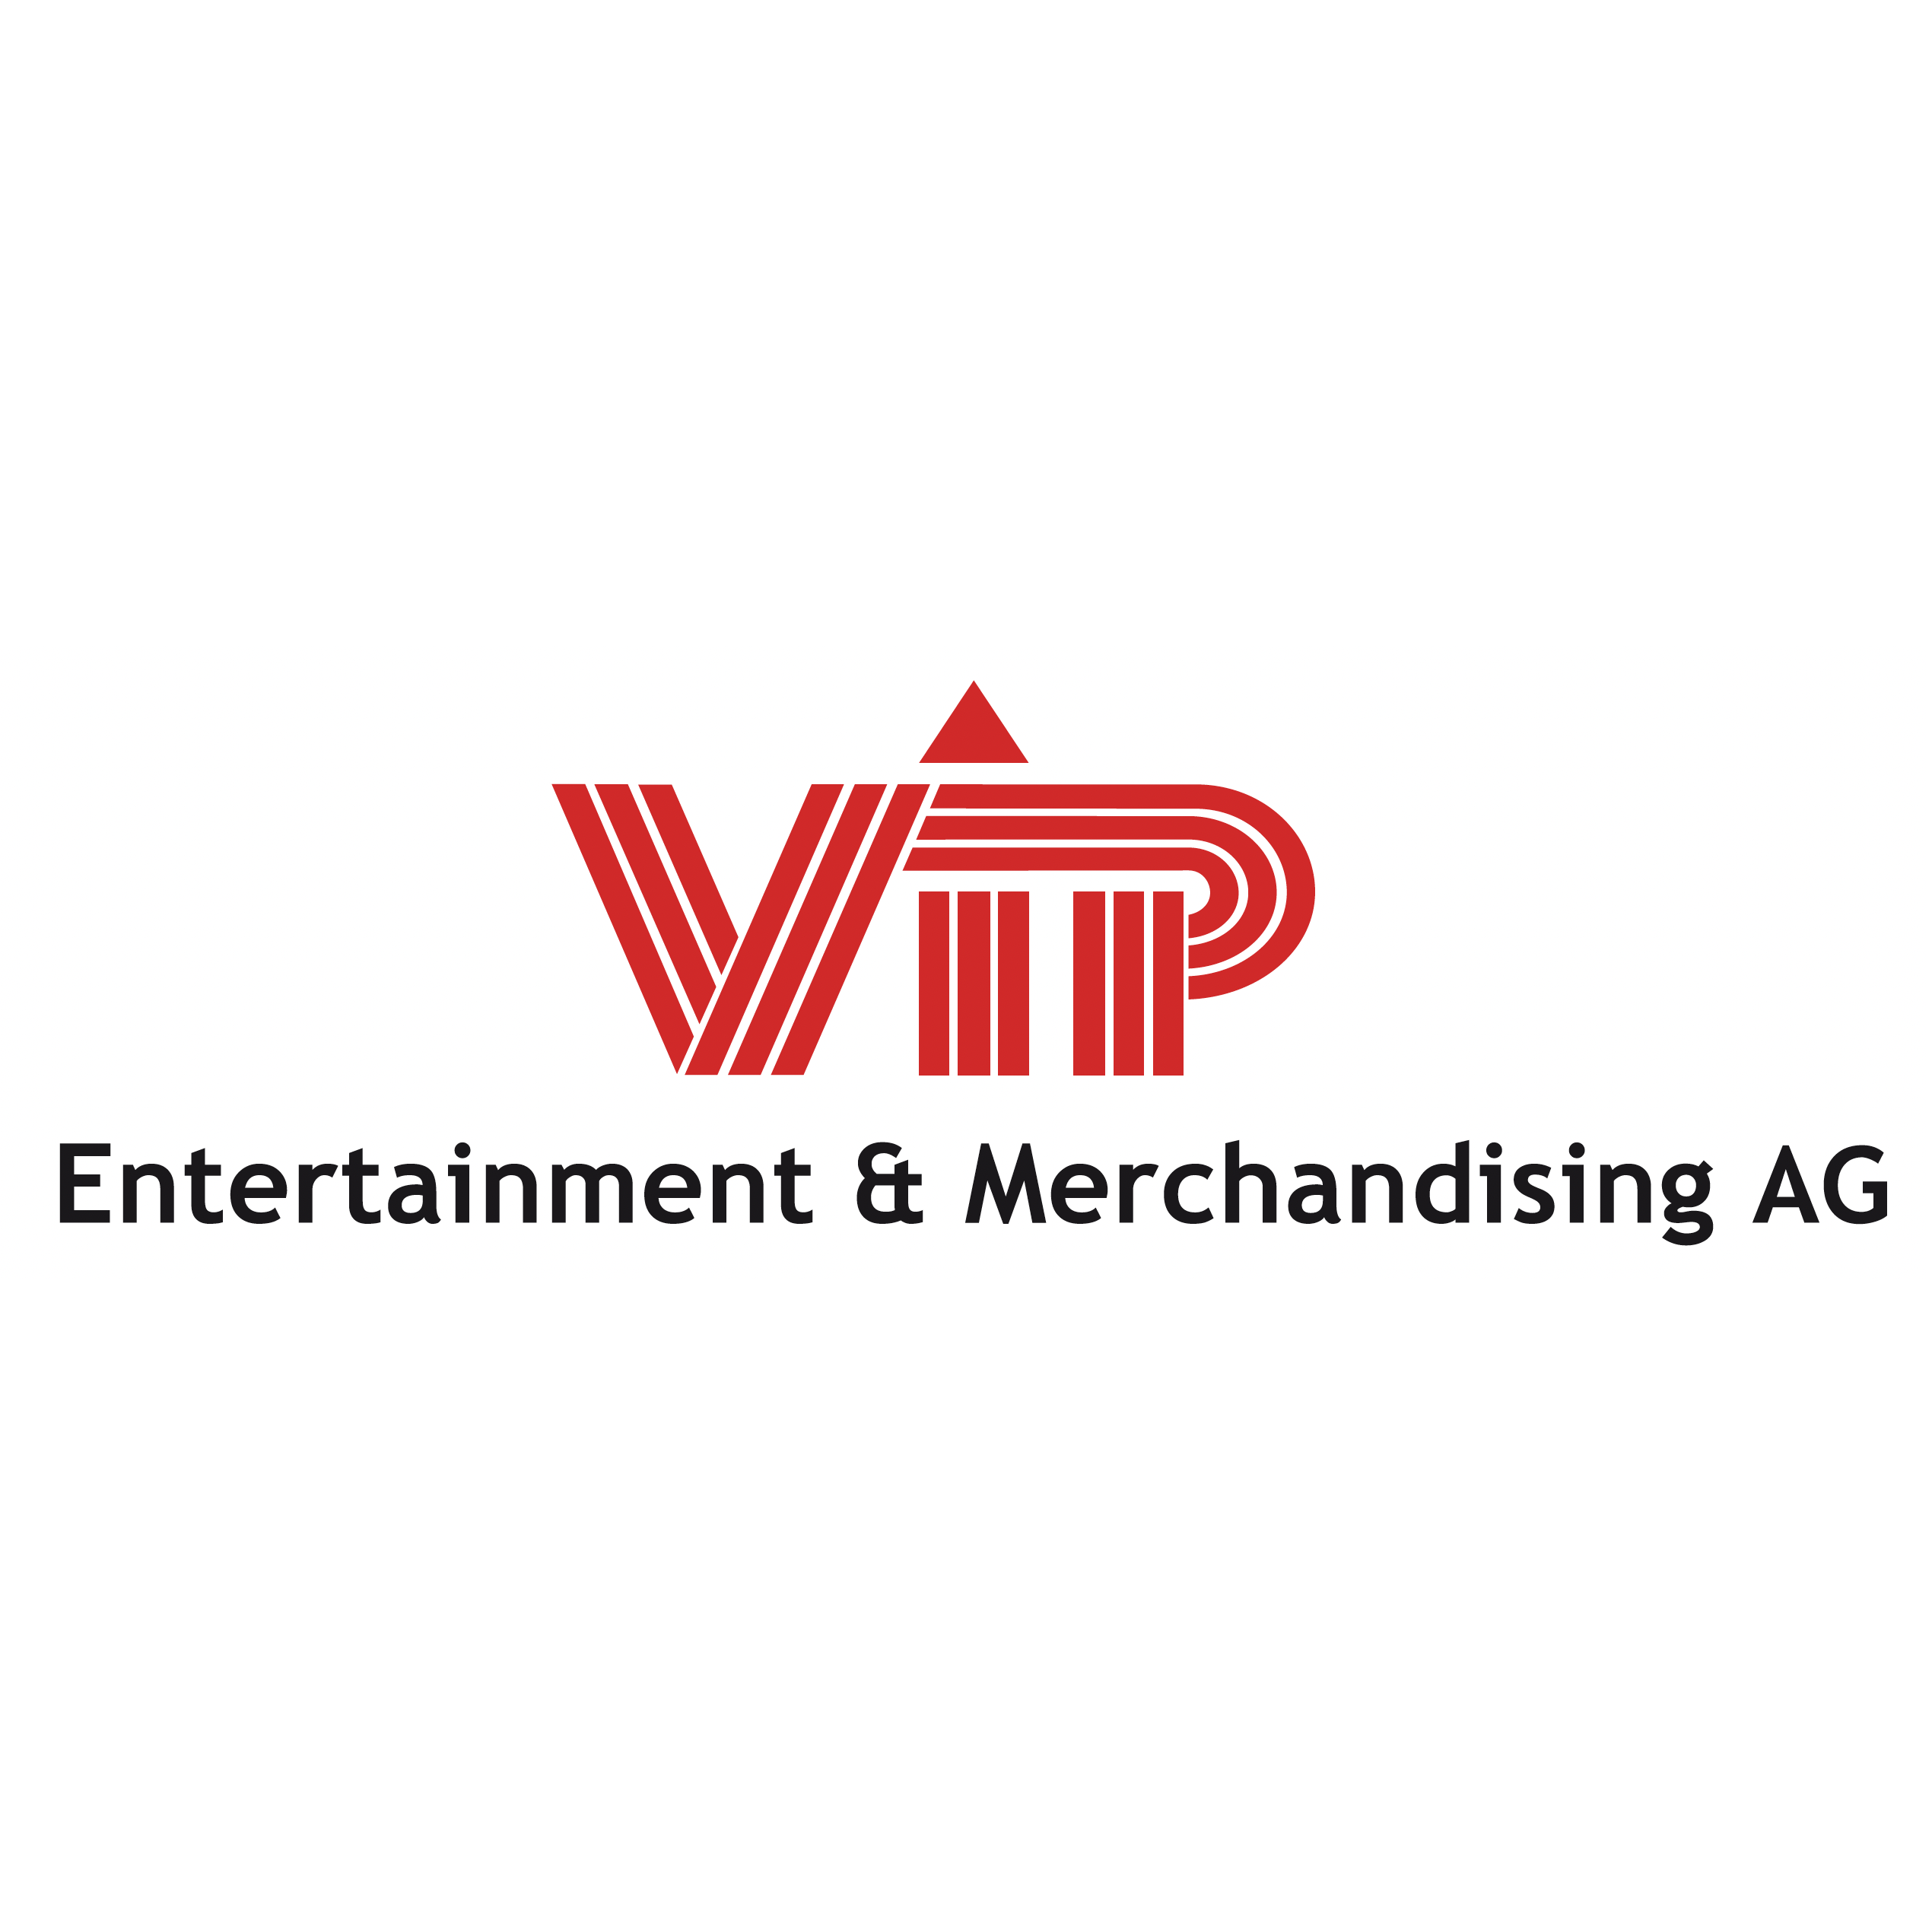 V.I.P. Entertainment & Merchandising AG